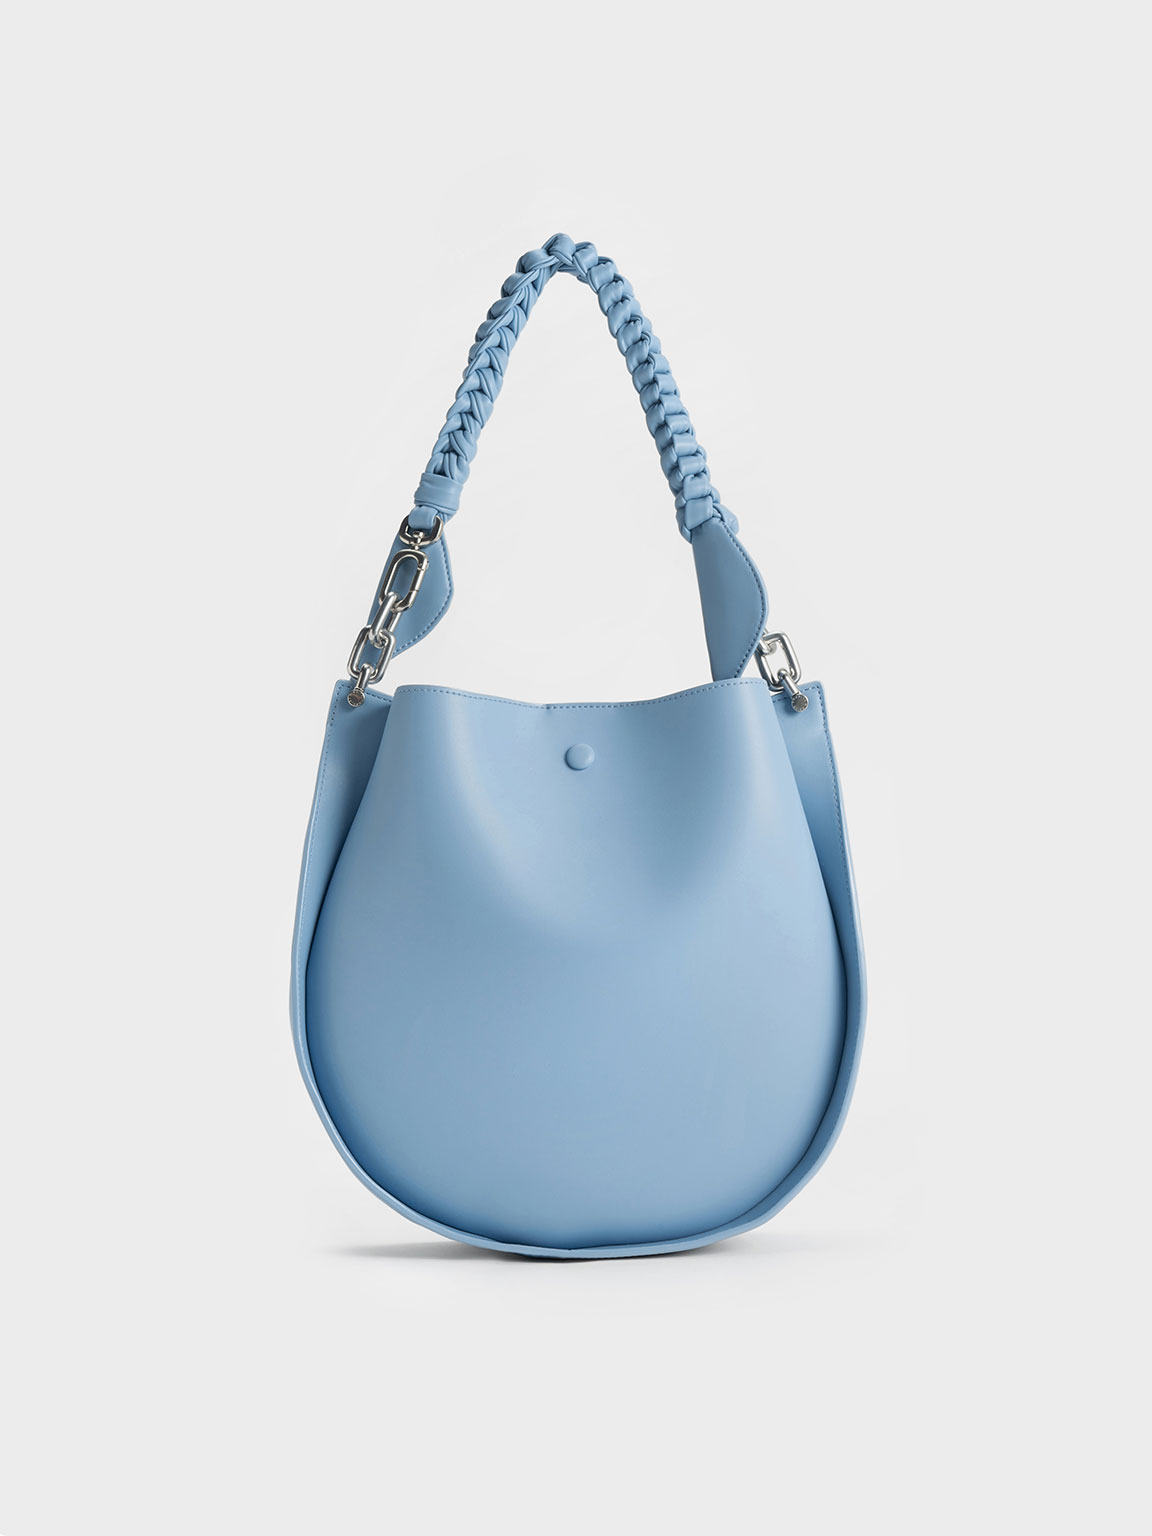 Chloé C Shoulder Bag in Grey Blue Leather